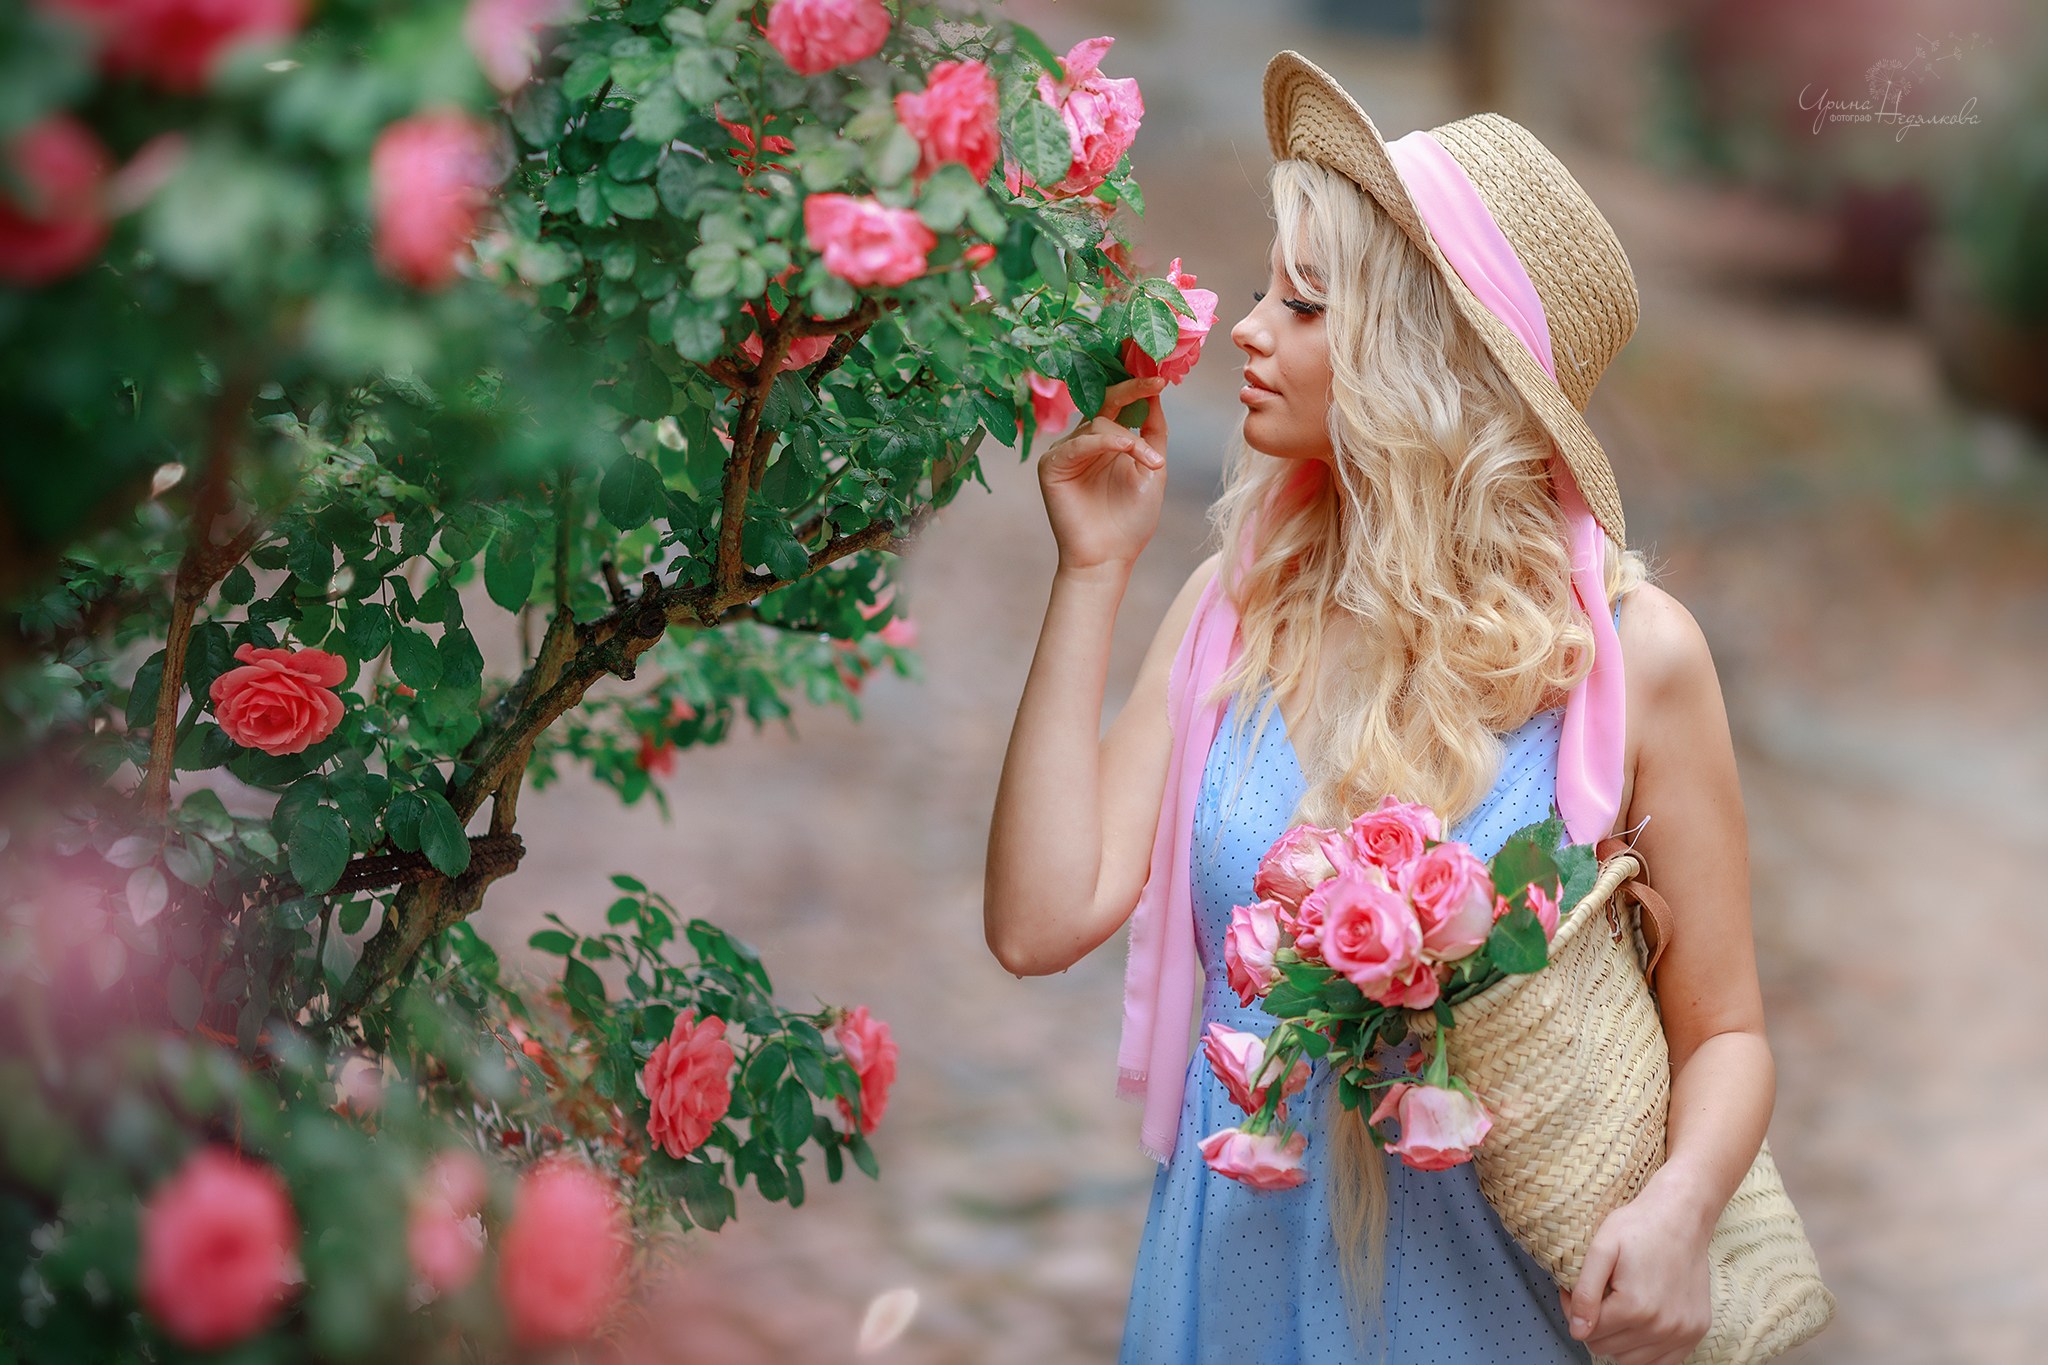 Розы красивые женщины. Недялкова Анастасия Сергеевна. Девушка в шляпке с цветами. Фотосессия в цветочном саду. Девушка в шляпе с цветами.